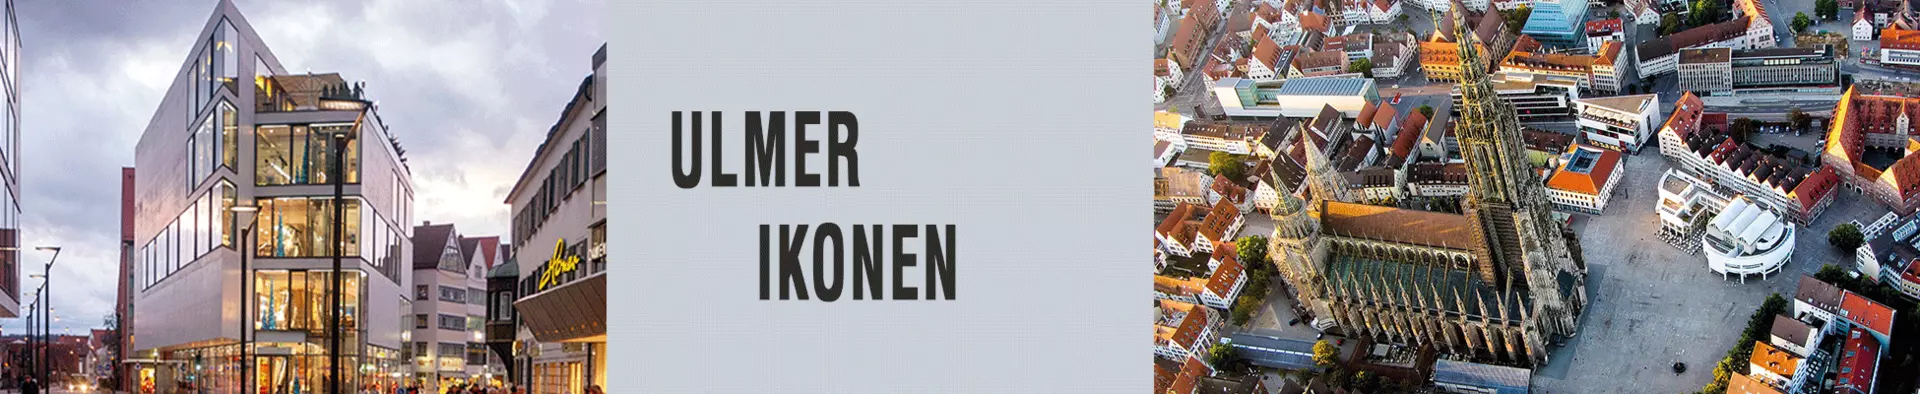 In der Nähe von interni by inhofer: Ulmer Ikonen - ein architektonisches Meisterstück